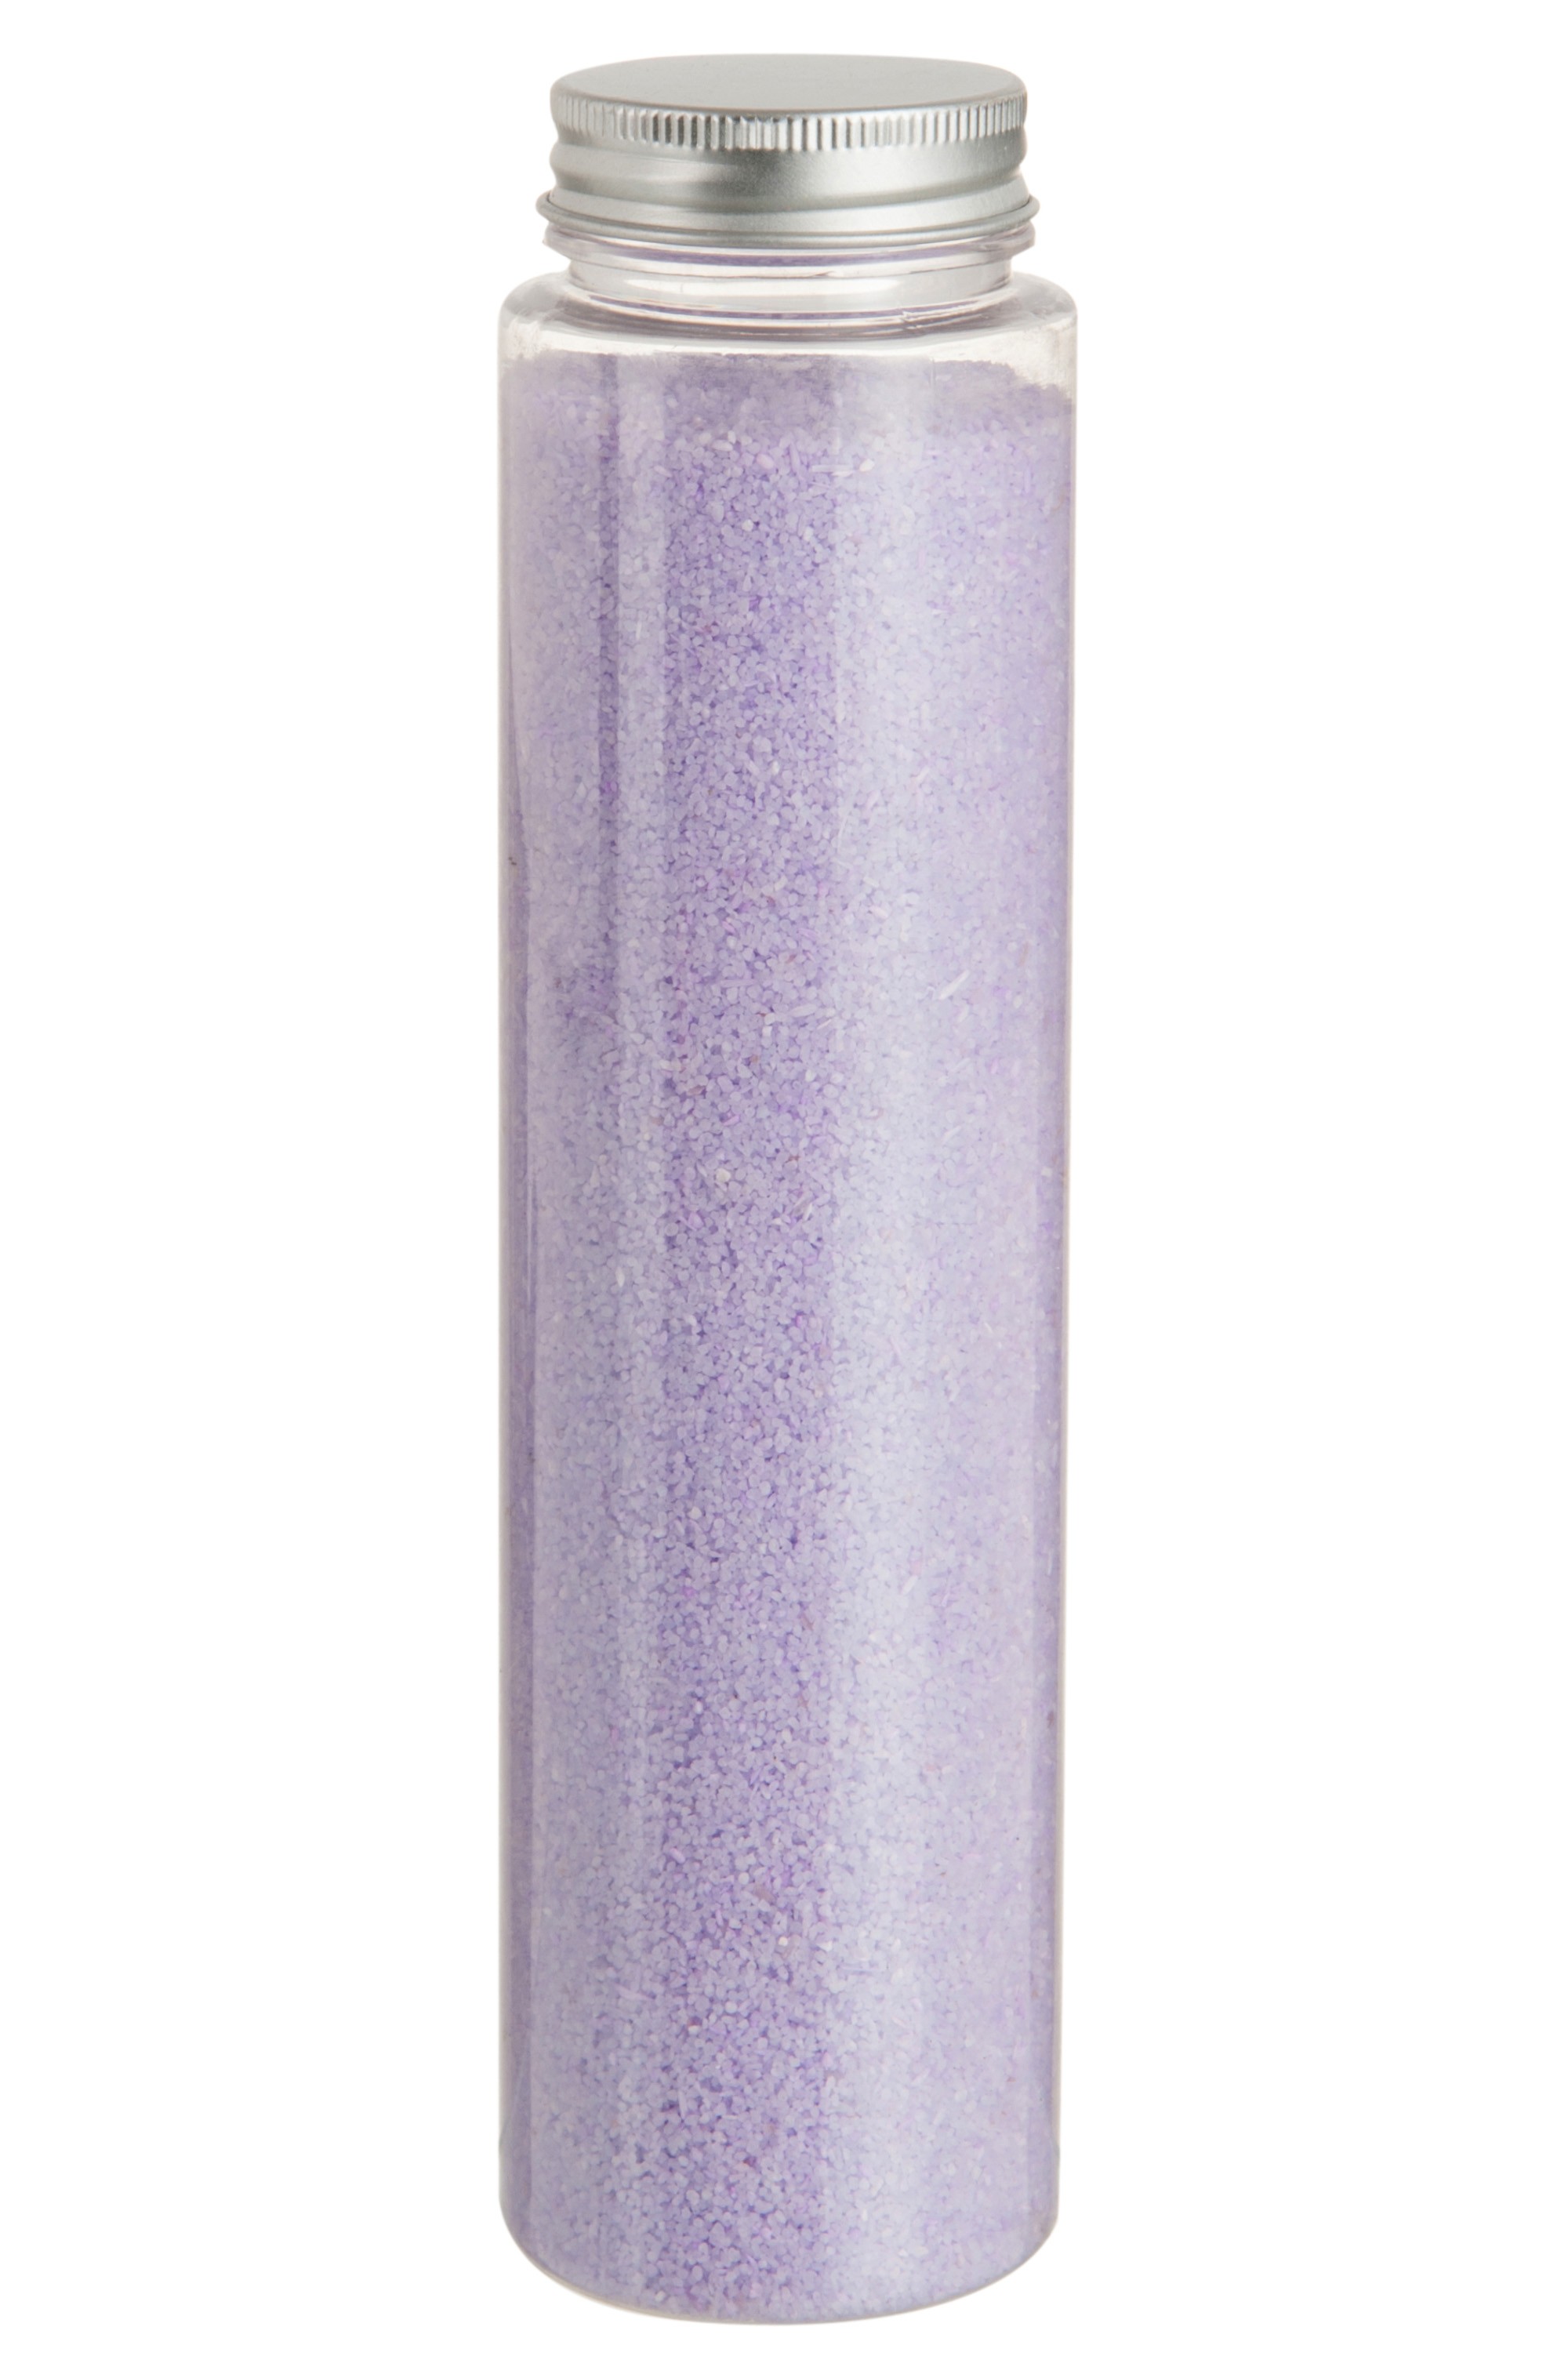 Dekorativní světle fialový písek v láhvi 600g - 5,4*5,4*21 cm 72184